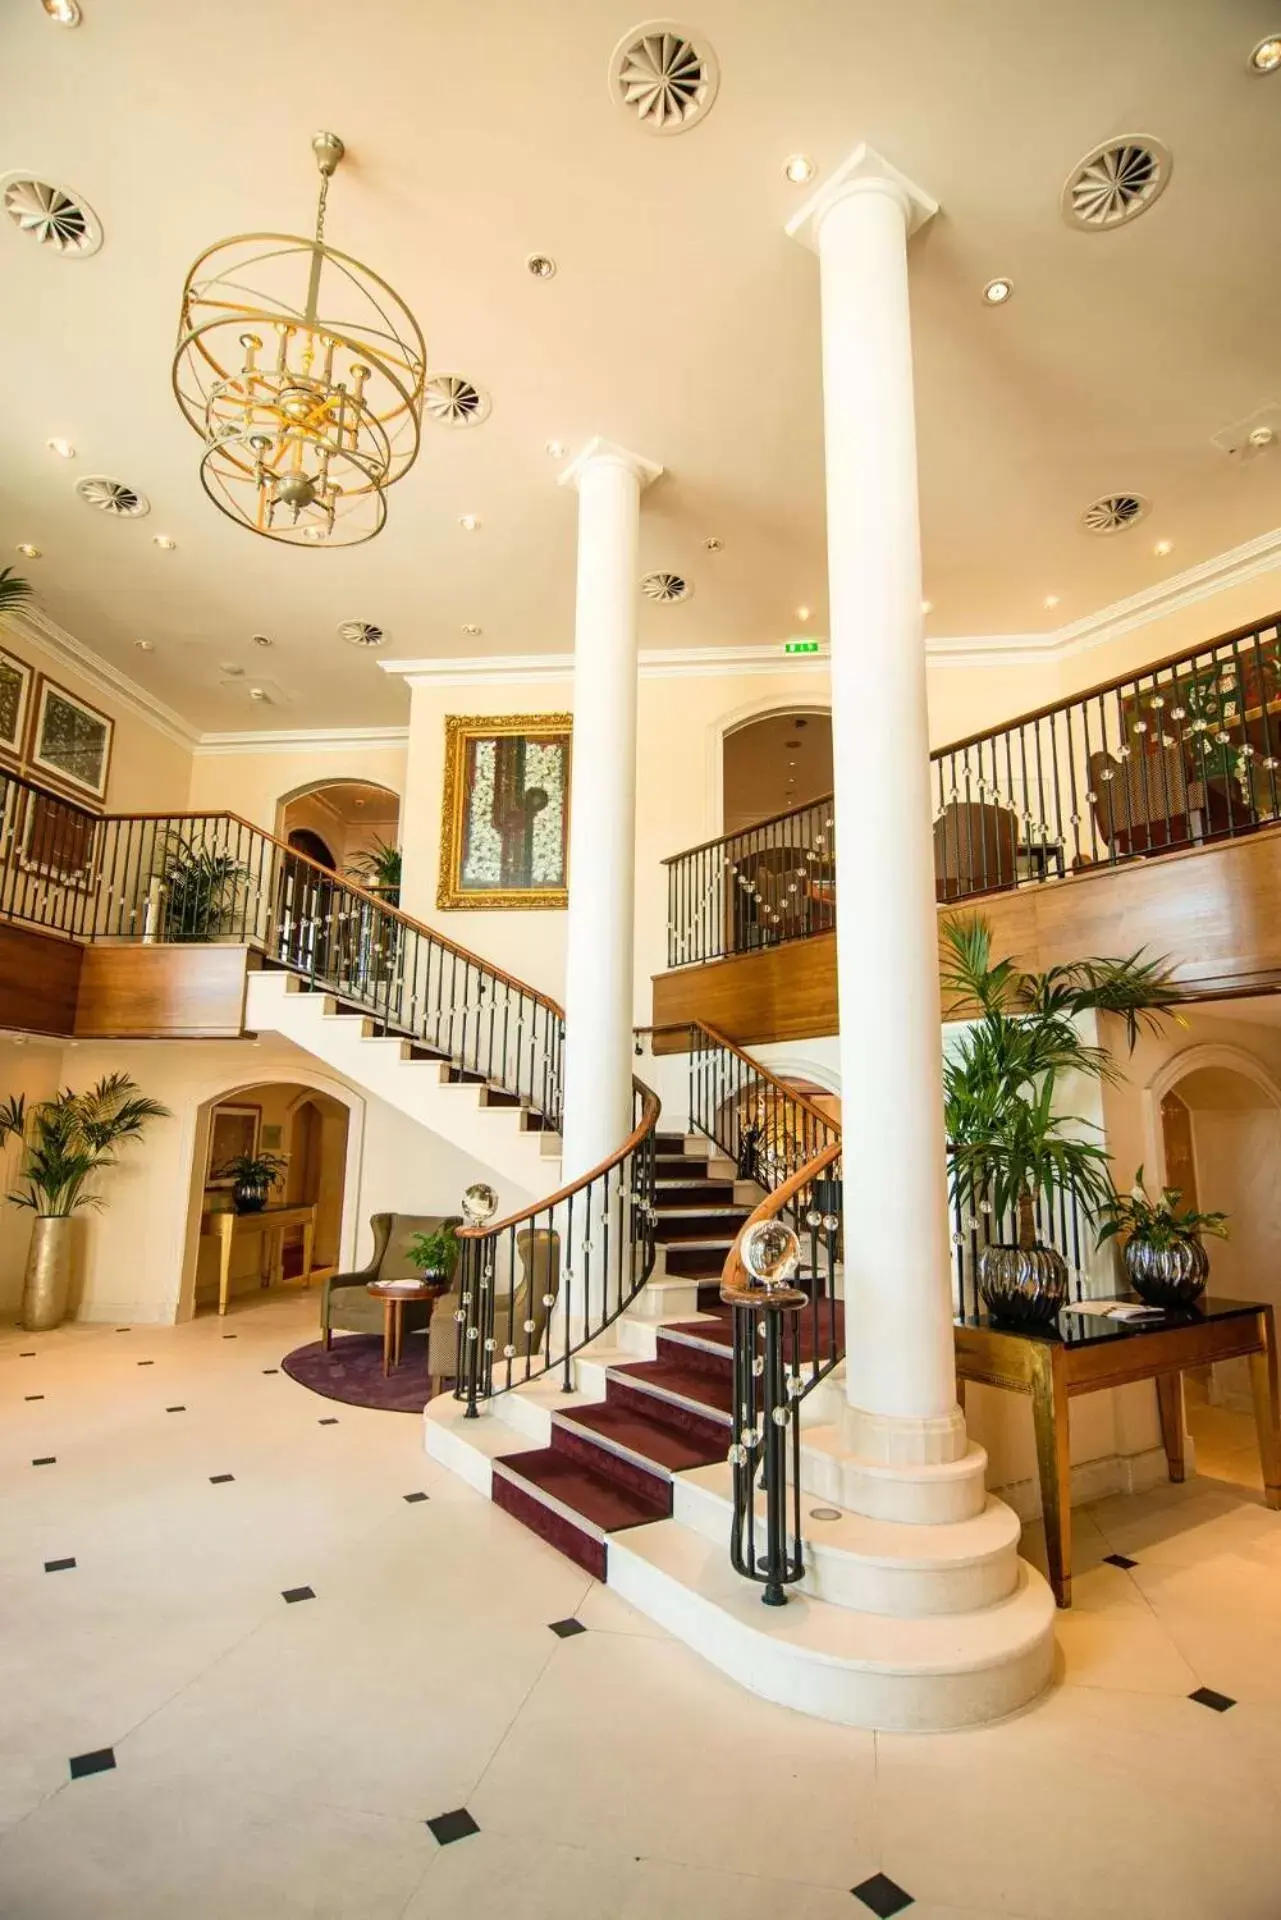 Lobby or reception in Maison Messmer - ein Mitglied der Hommage Luxury Hotels Collection